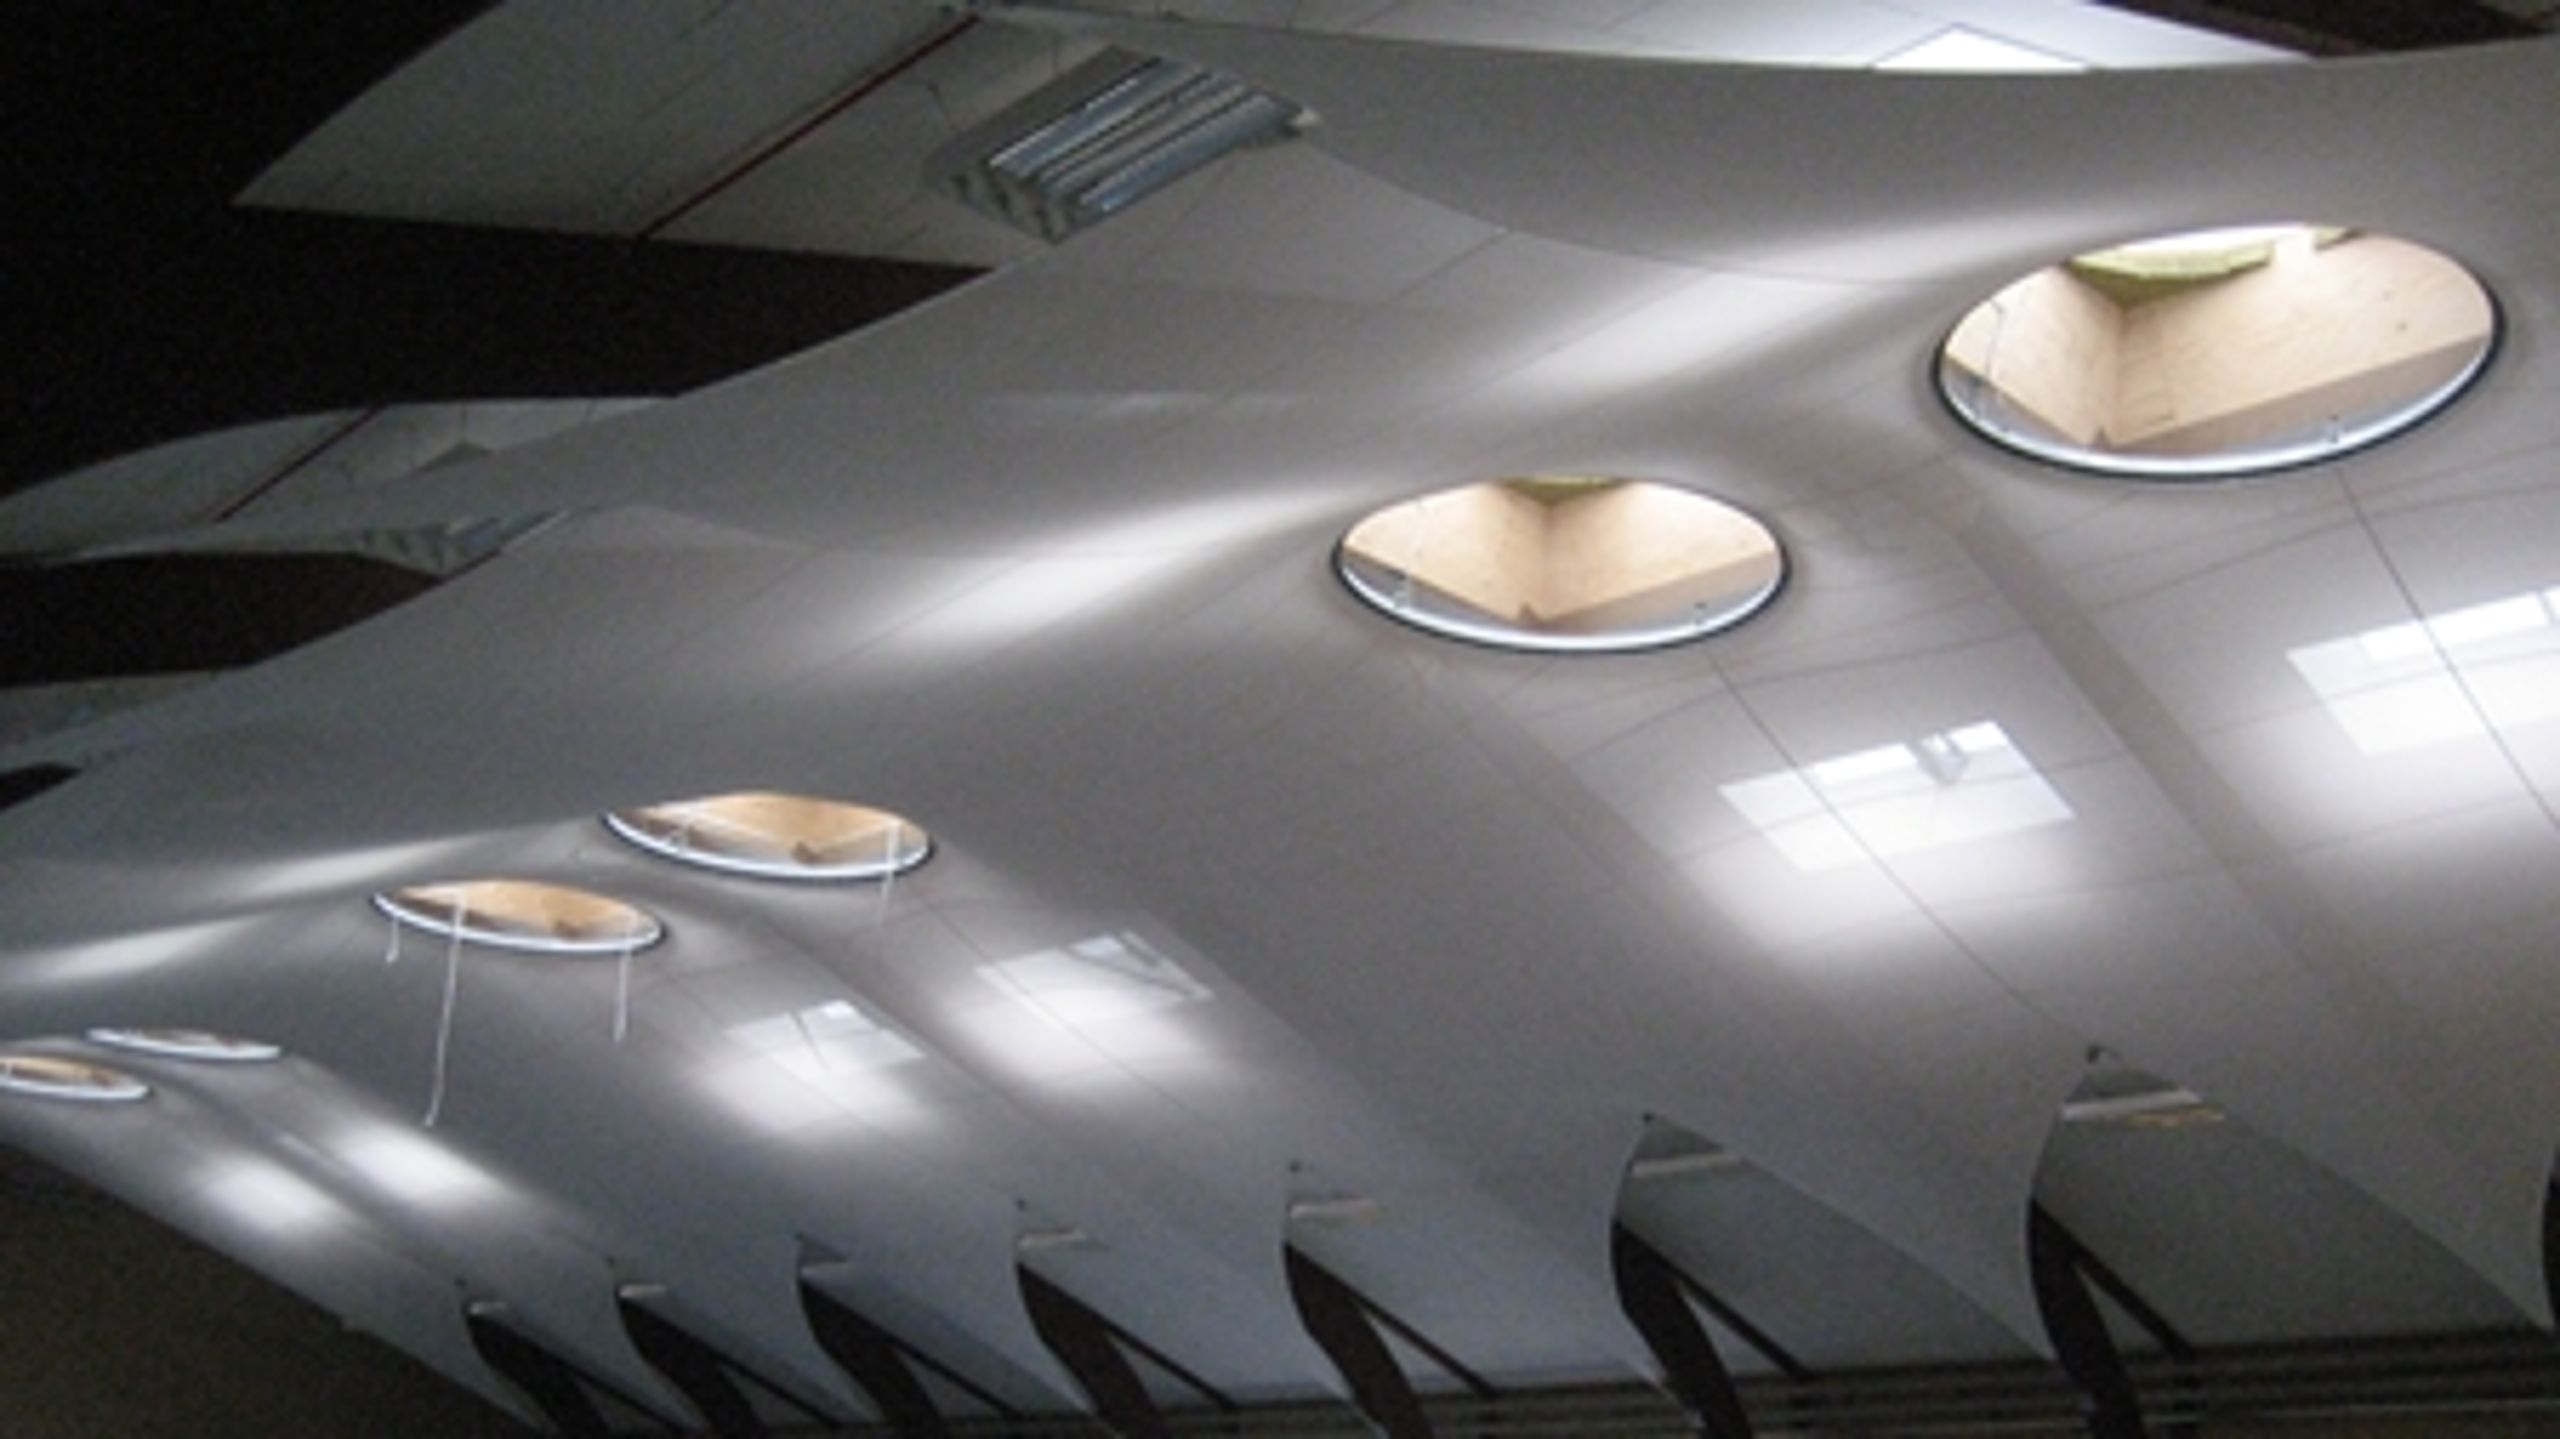 Loftet i Diamanten, der er et nyrenoveret kultur- og idrætscenter på Als. Centret har et energiforbrug på kun 50 procent af normale nybyggede haller. Elektriciteten kommer fra solceller på taget, og et avanceret ventilationssystem genbruger varmen og sikrer energirigtig køling af bygningen. 